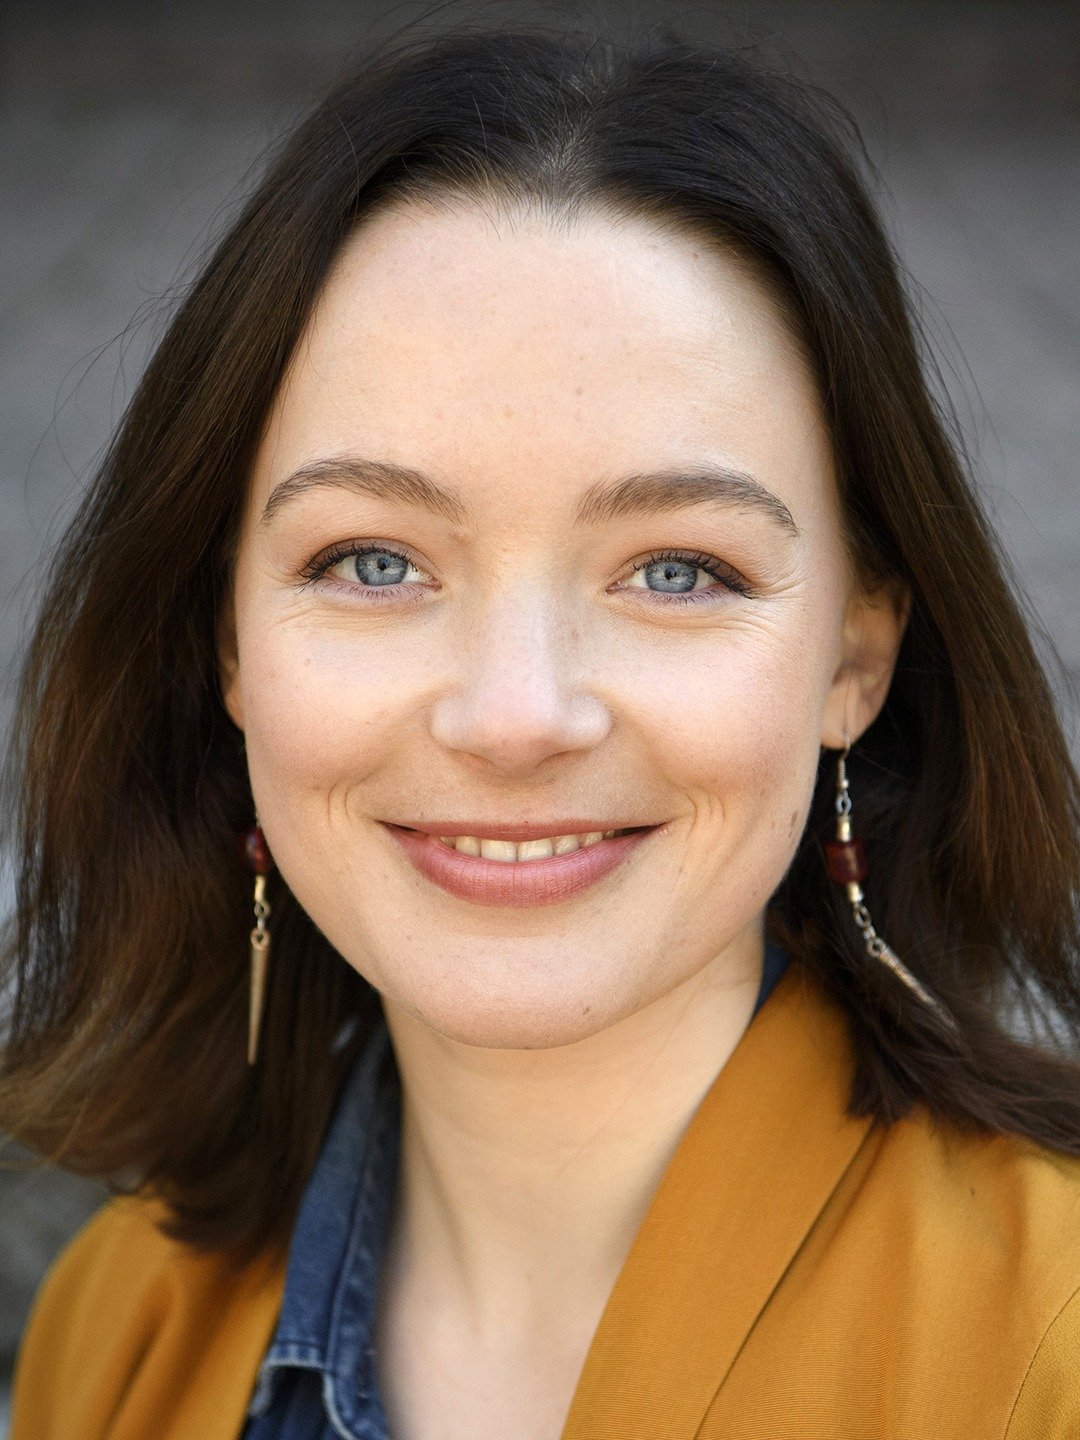 Amalia Holm - Actress